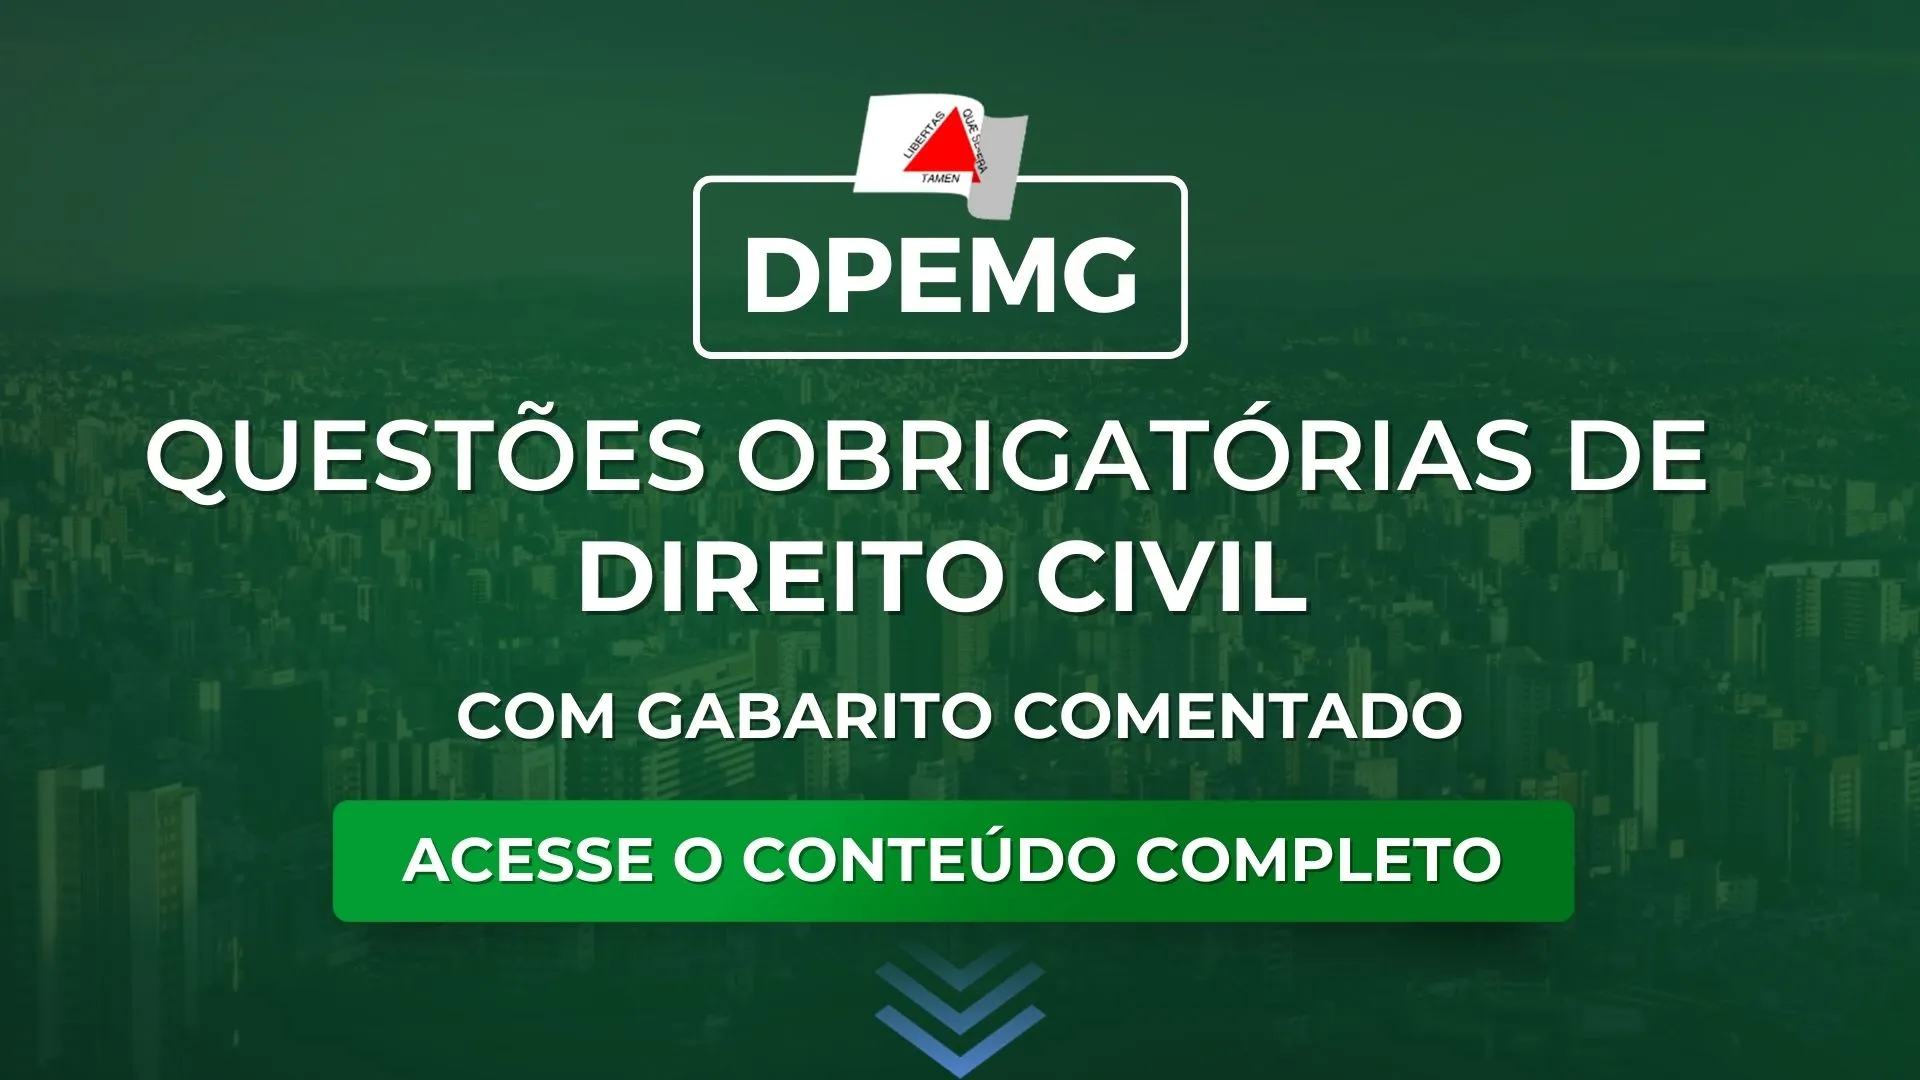 DPEMG: Questões obrigatórias de Civil com gabarito comentado para o concurso